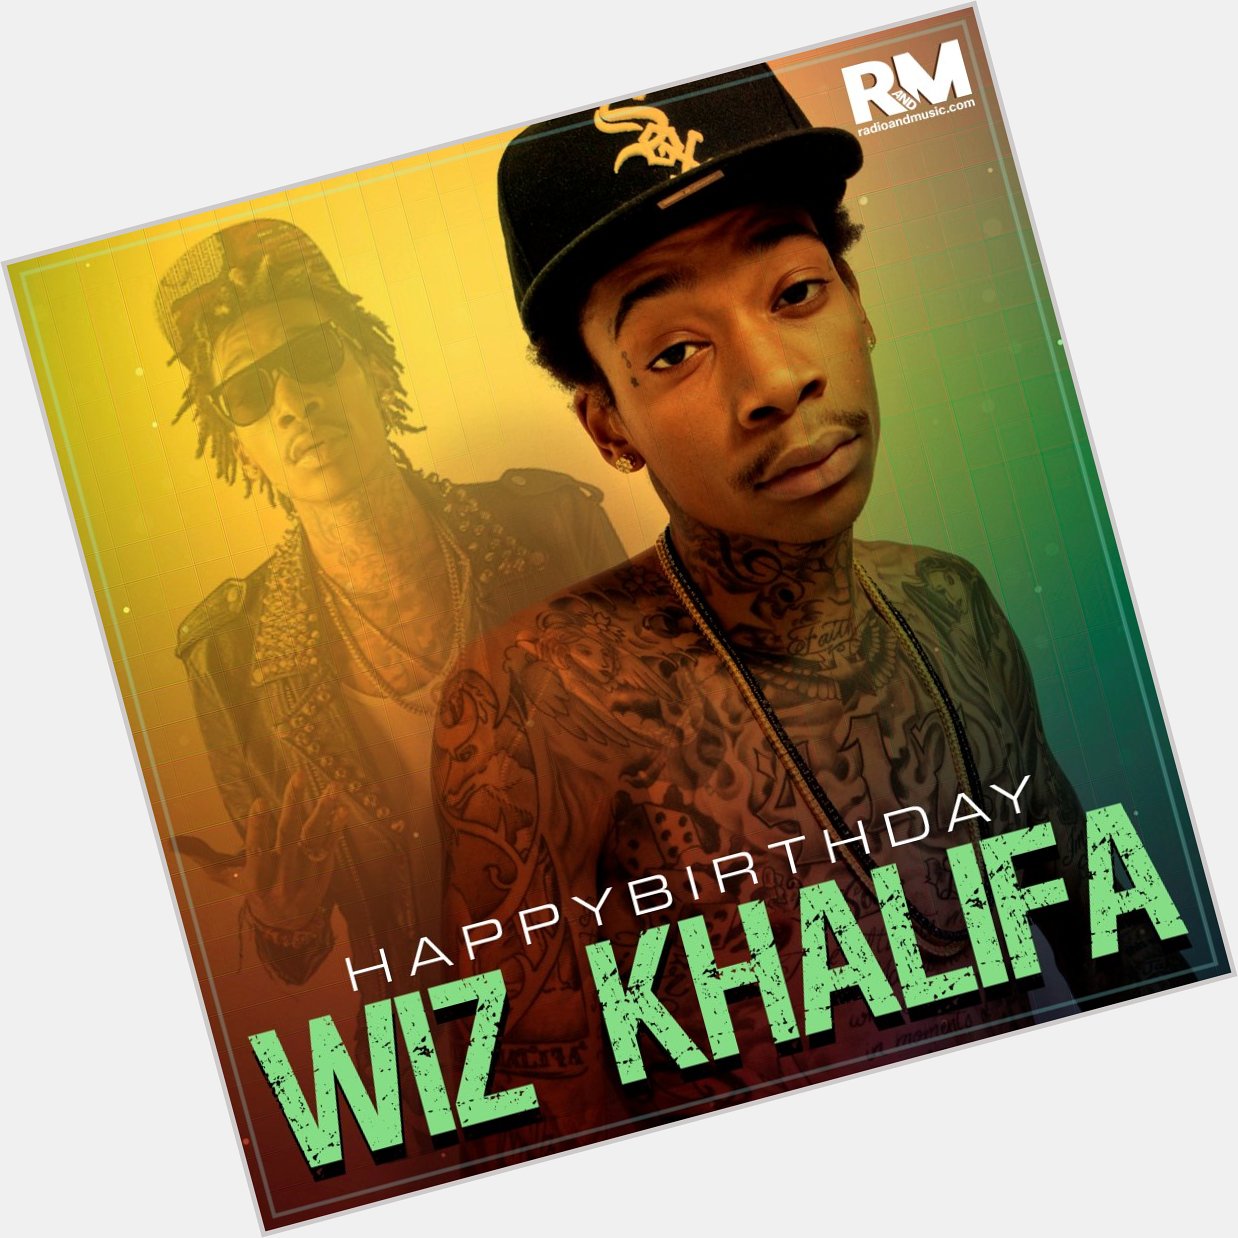 Wish you a very Happy Birthday Wiz Khalifa.     